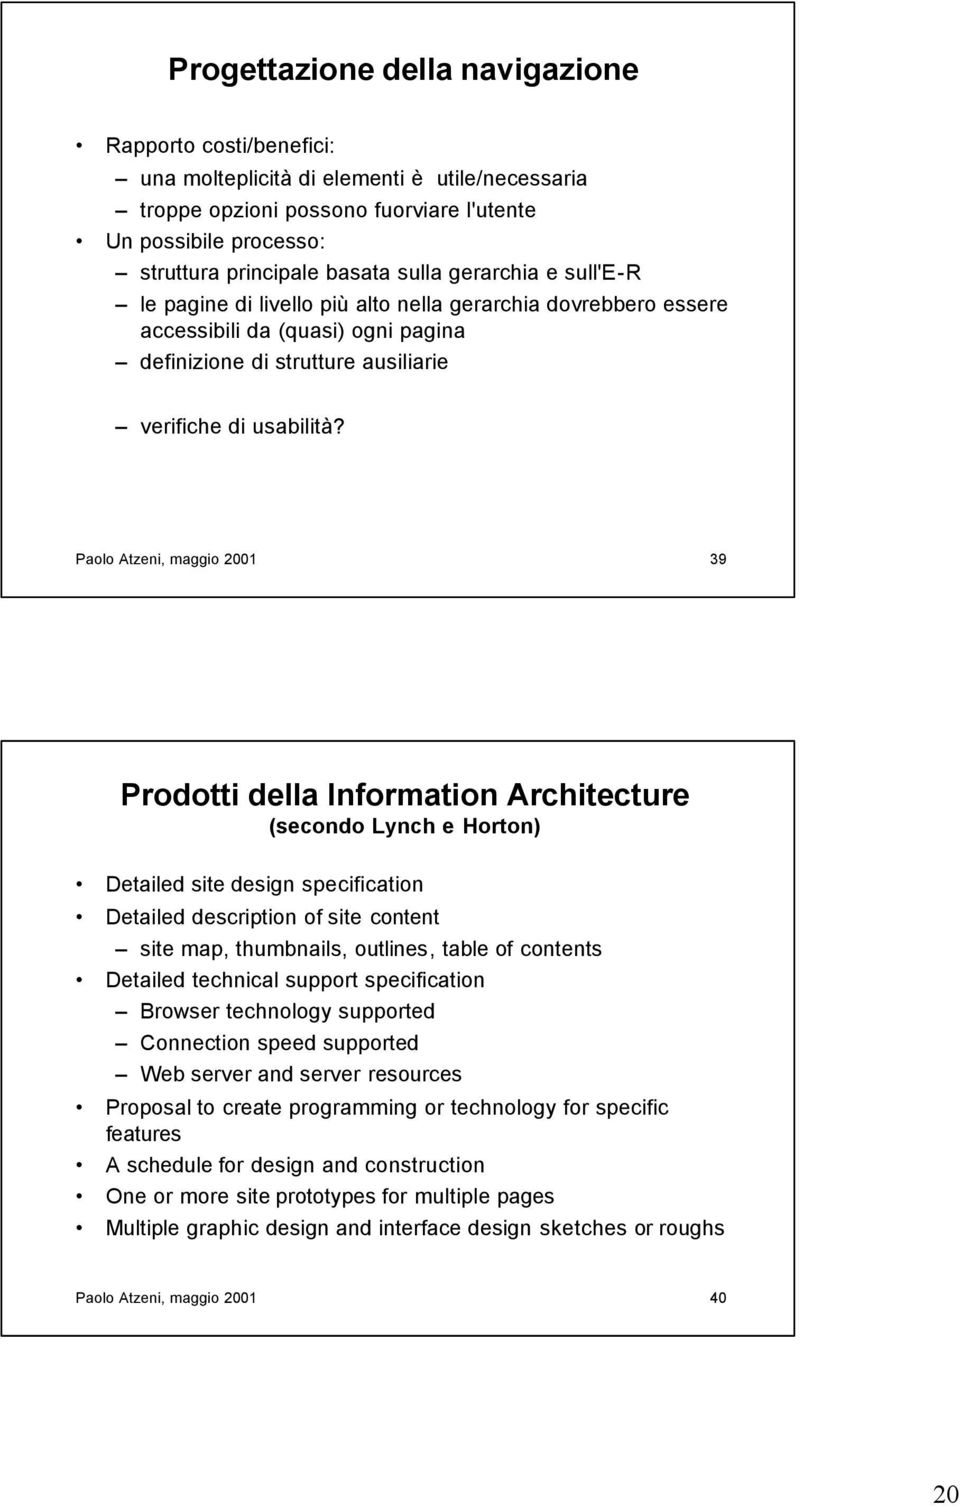 Paolo Atzeni, maggio 2001 39 Prodotti della Information Architecture (secondo Lynch e Horton) Detailed site design specification Detailed description of site content site map, thumbnails, outlines,